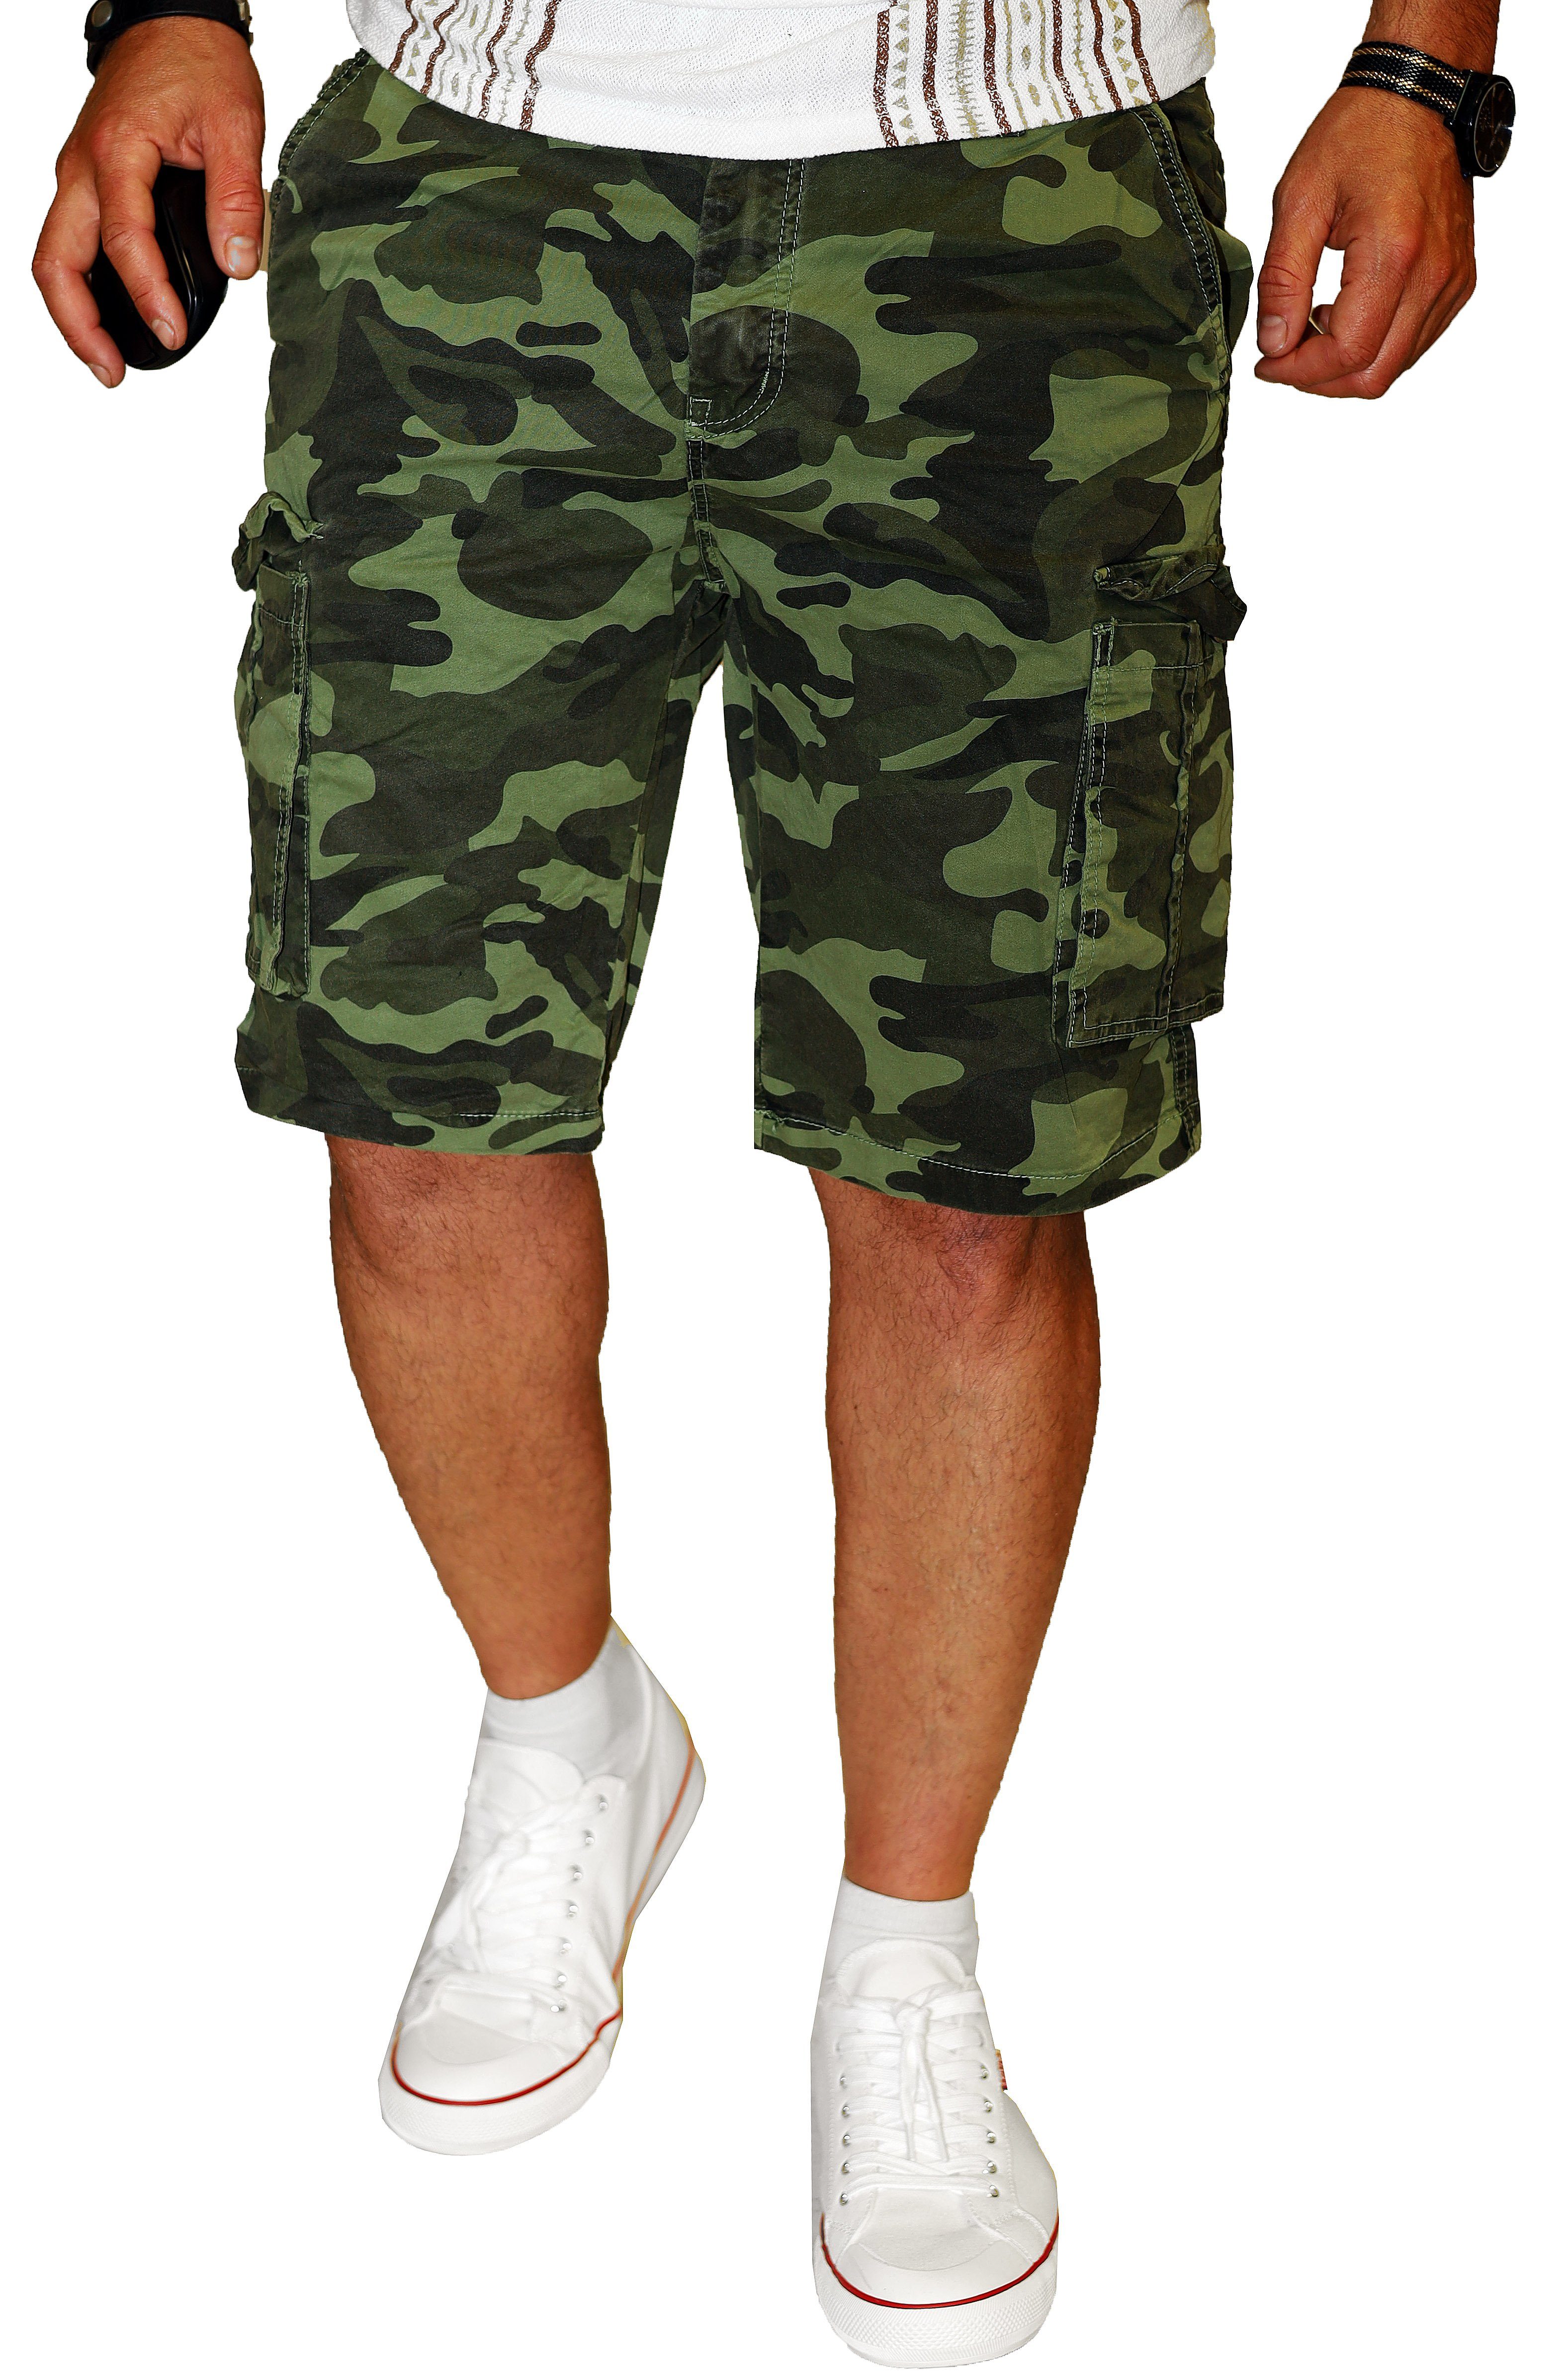 RMK Cargoshorts Herren Short Camouflage 100% Hose Bermuda Set Army Baumwolle Grün Tarn kurze in Tarnfarben, aus